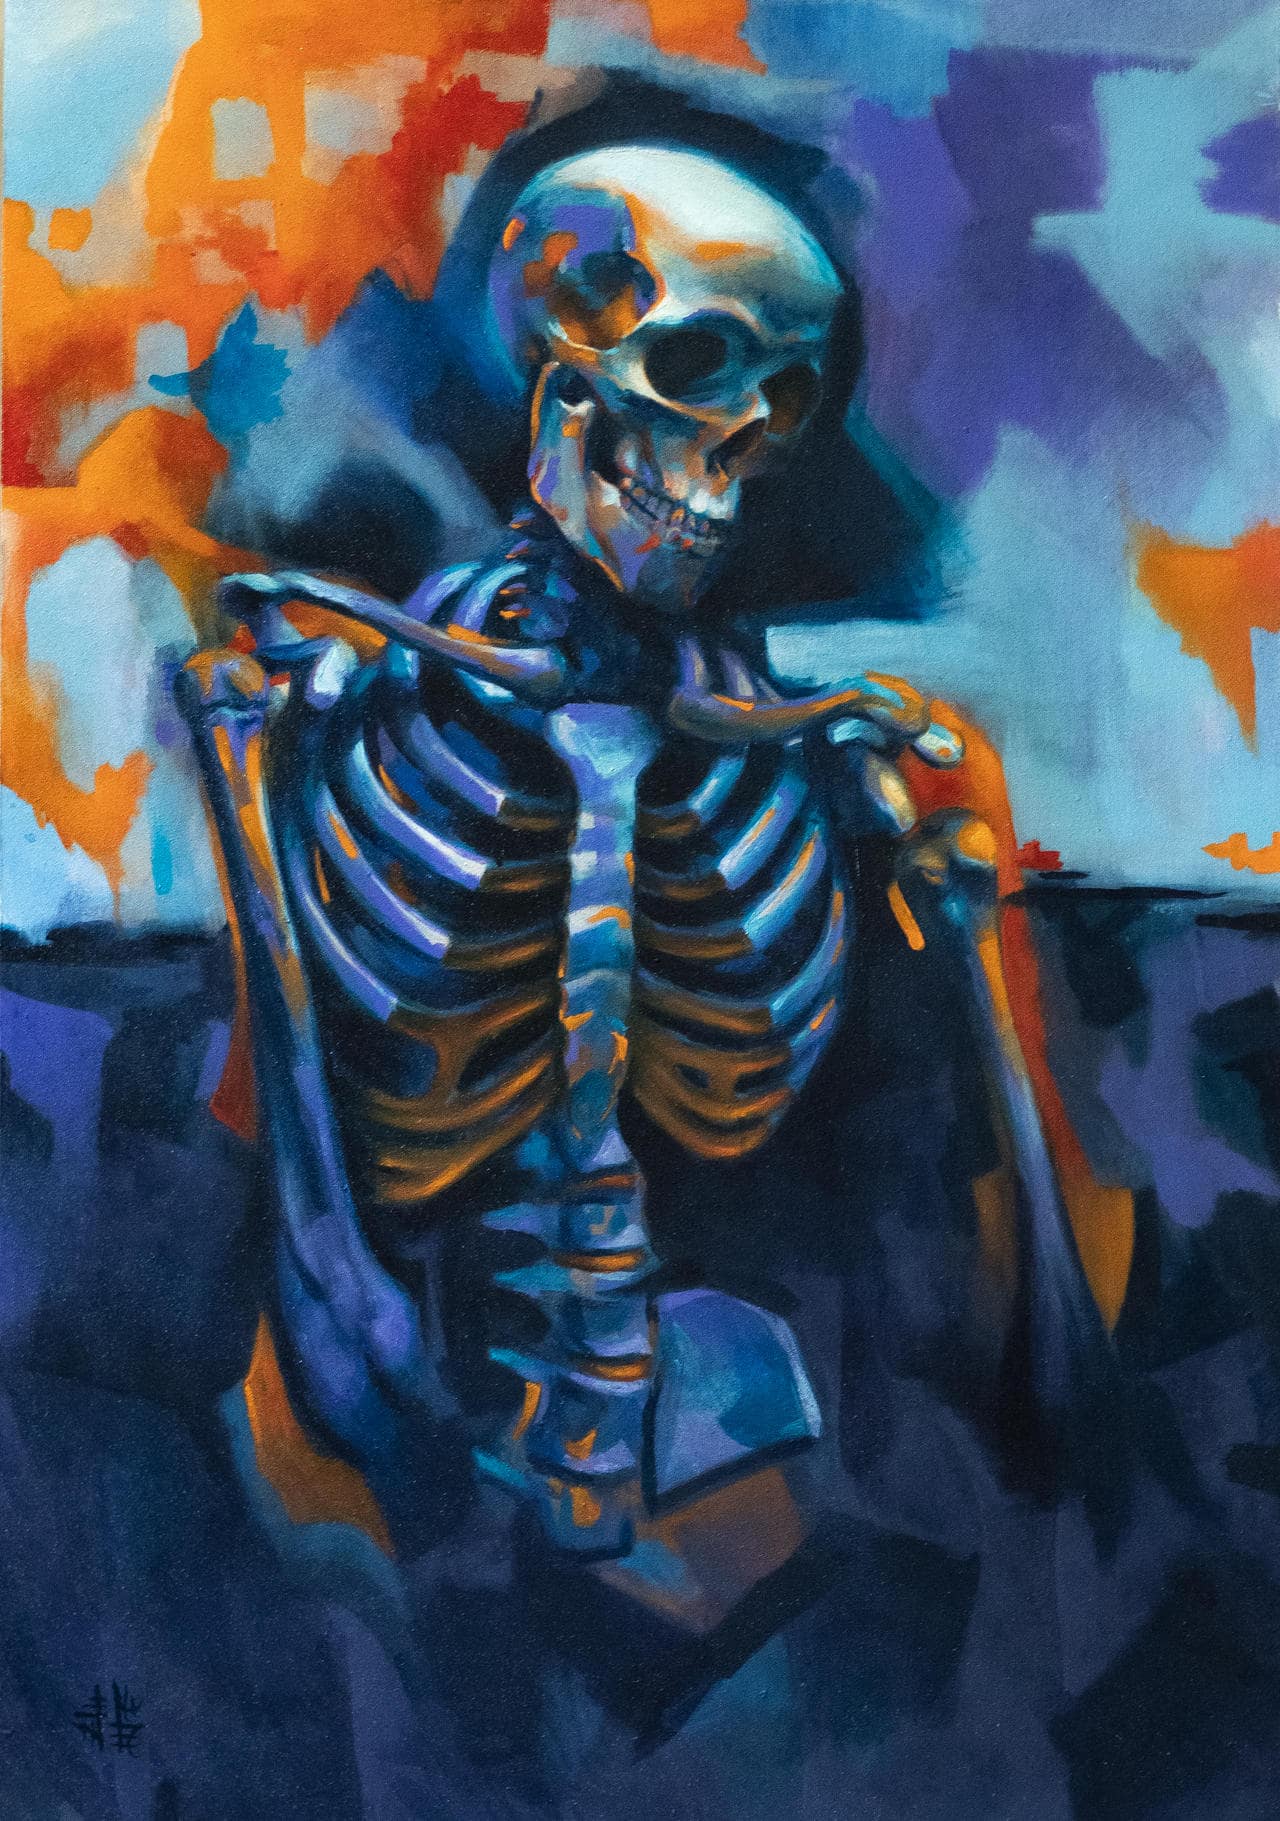 Sad skeleton by hanykayal on DeviantArt